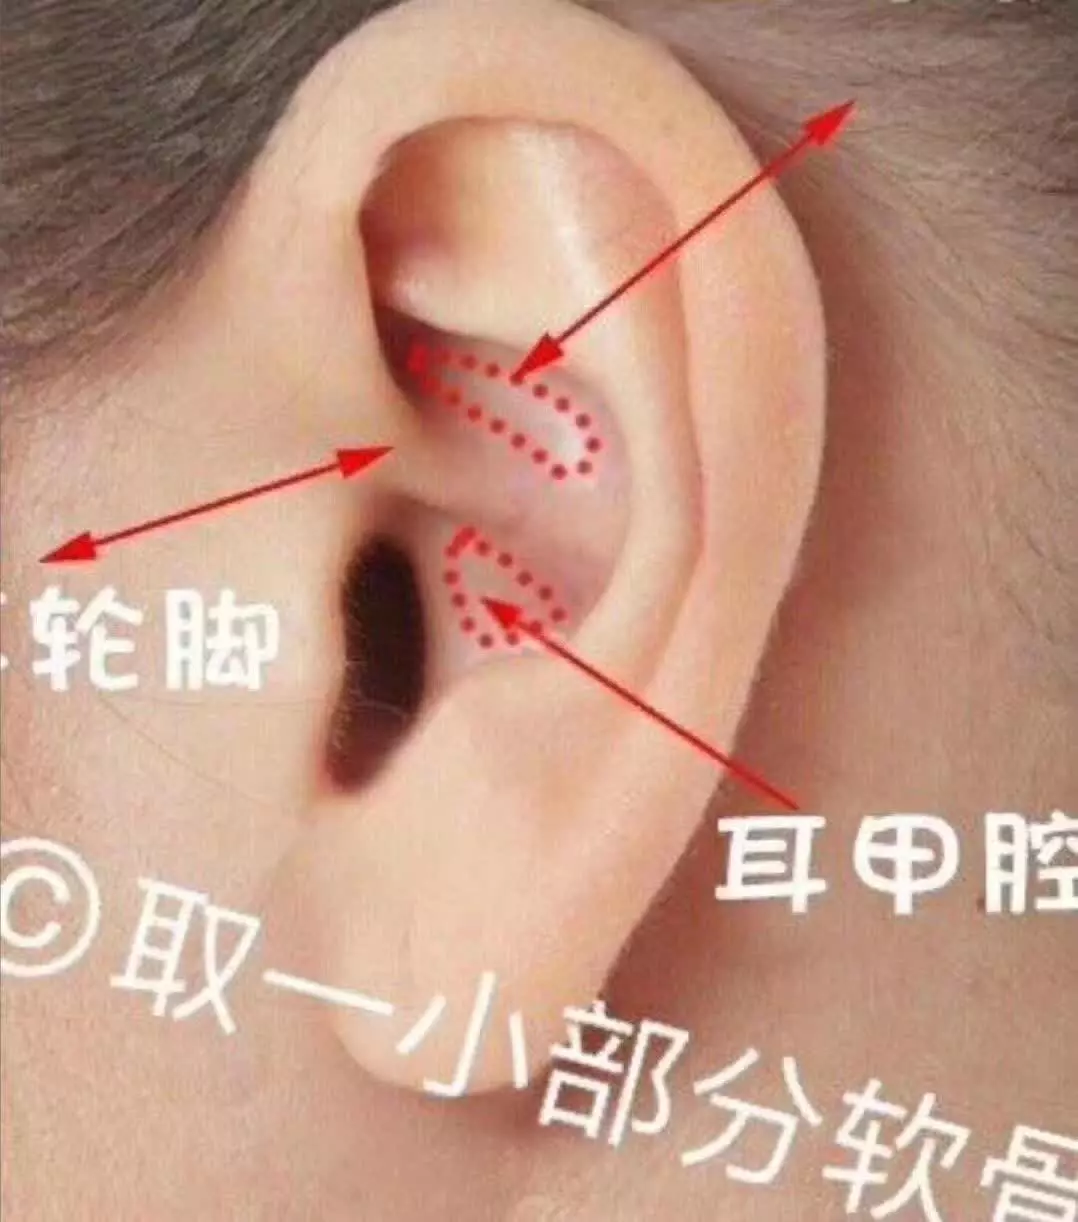 2、耳朵硬和软都代表什么意思:汉字的偏旁中，有软耳和硬耳的说法吗？其区别是什么？